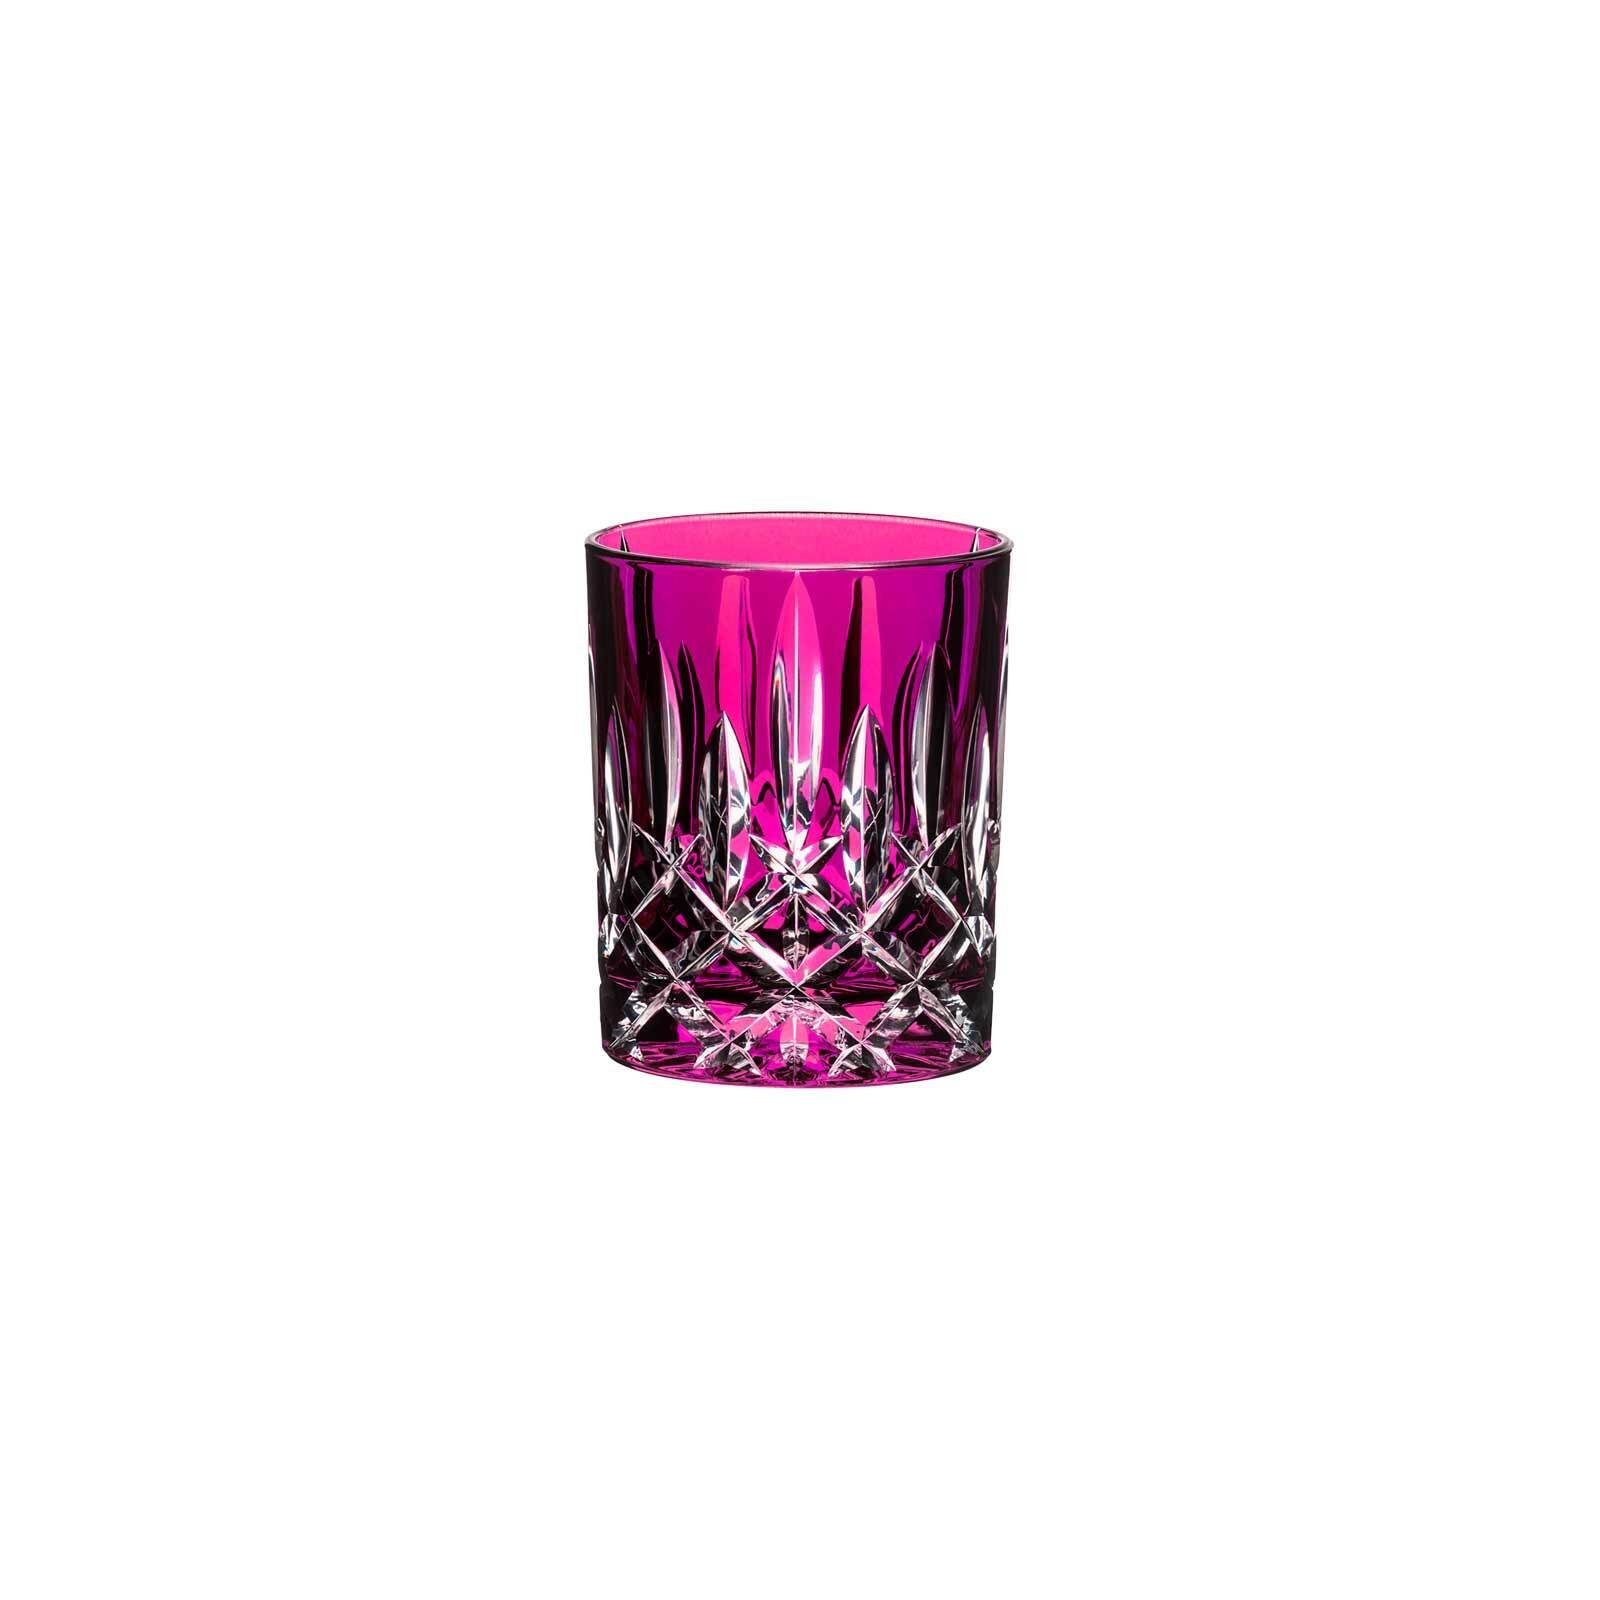 RIEDEL Glas Whiskyglas Laudon Whiskyglas 295 ml, Glas Pink | Whiskygläser